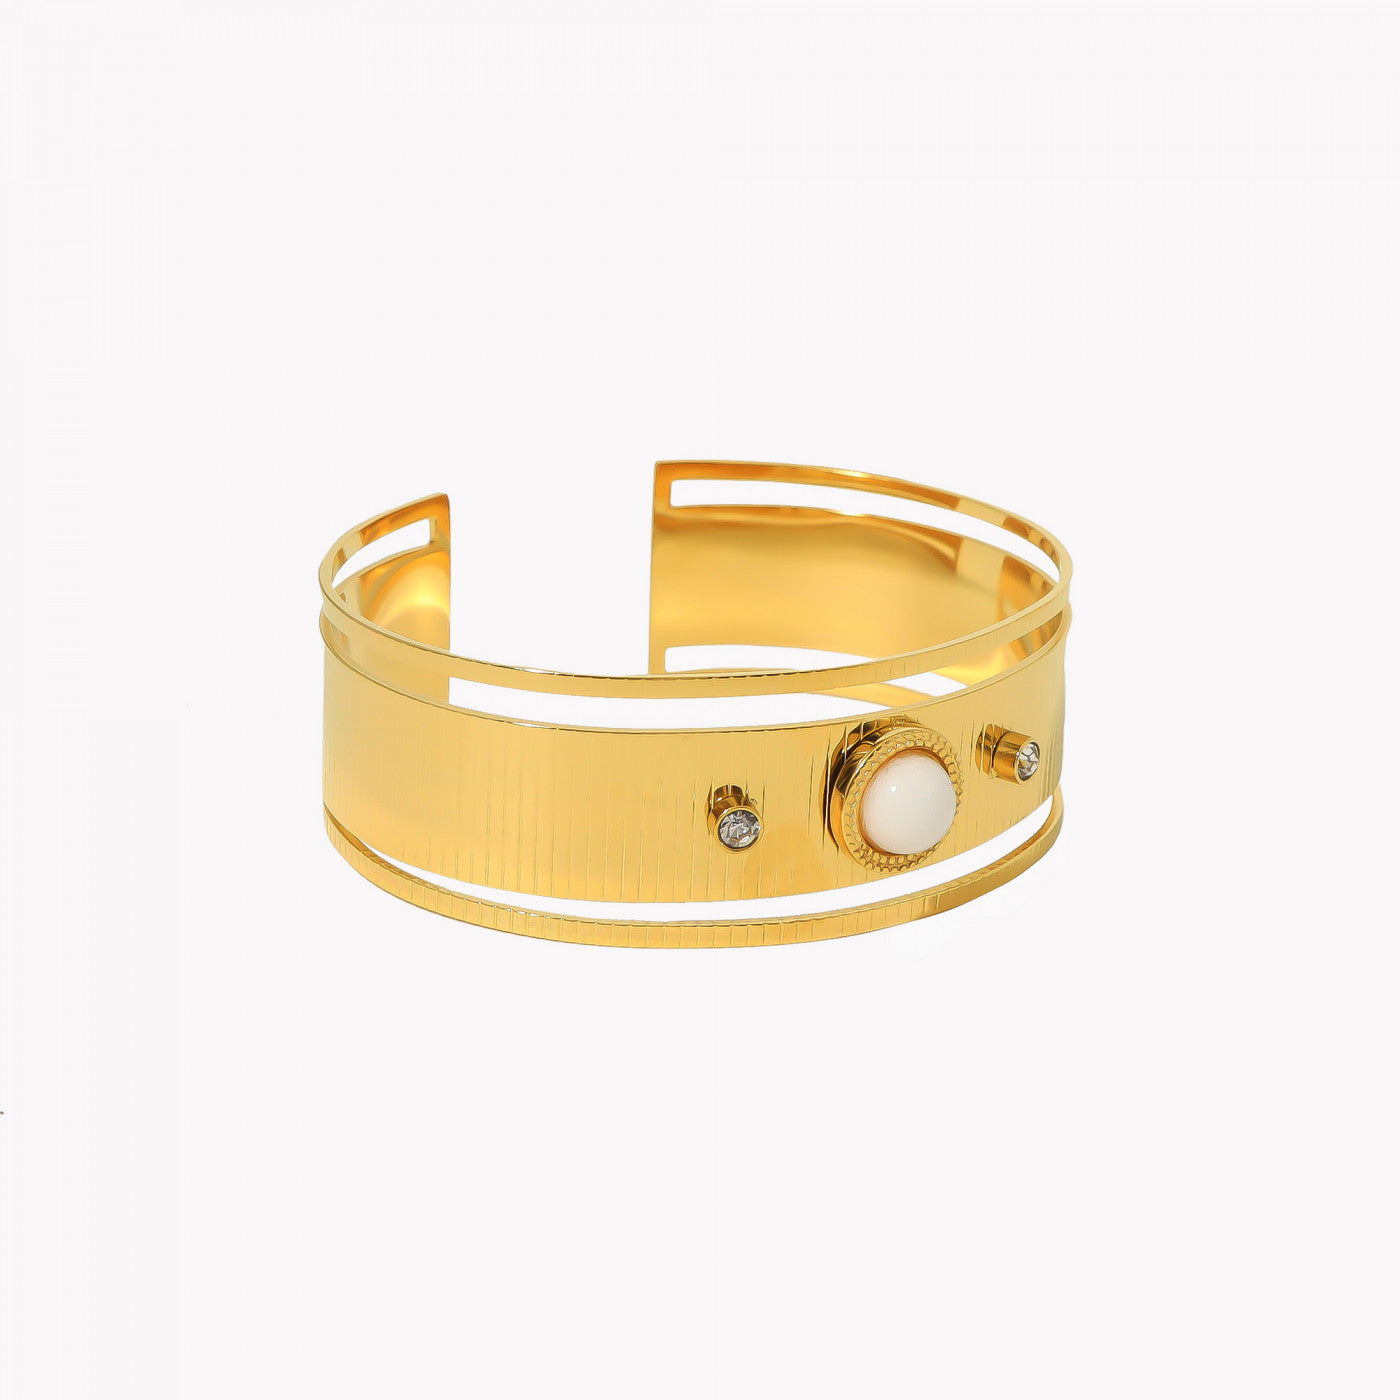 Goldenes Edelstahl-Blütenarmband in 2 Farben